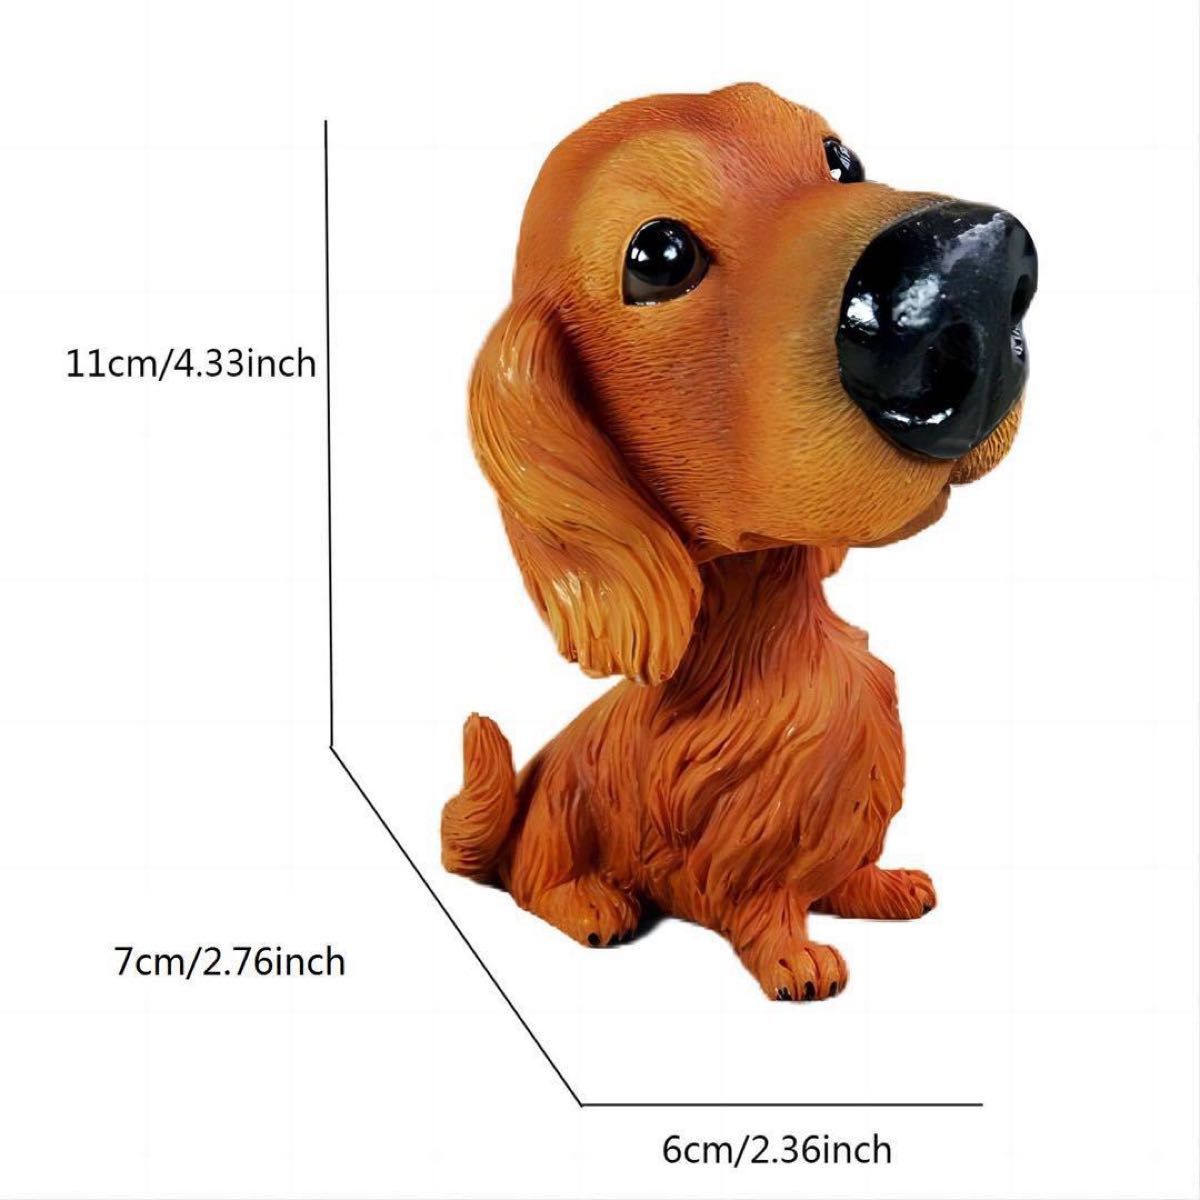 ボビングヘッド 犬 樹脂製 フィギュア 人形 装飾 ゴールデンレトリーバー 置物